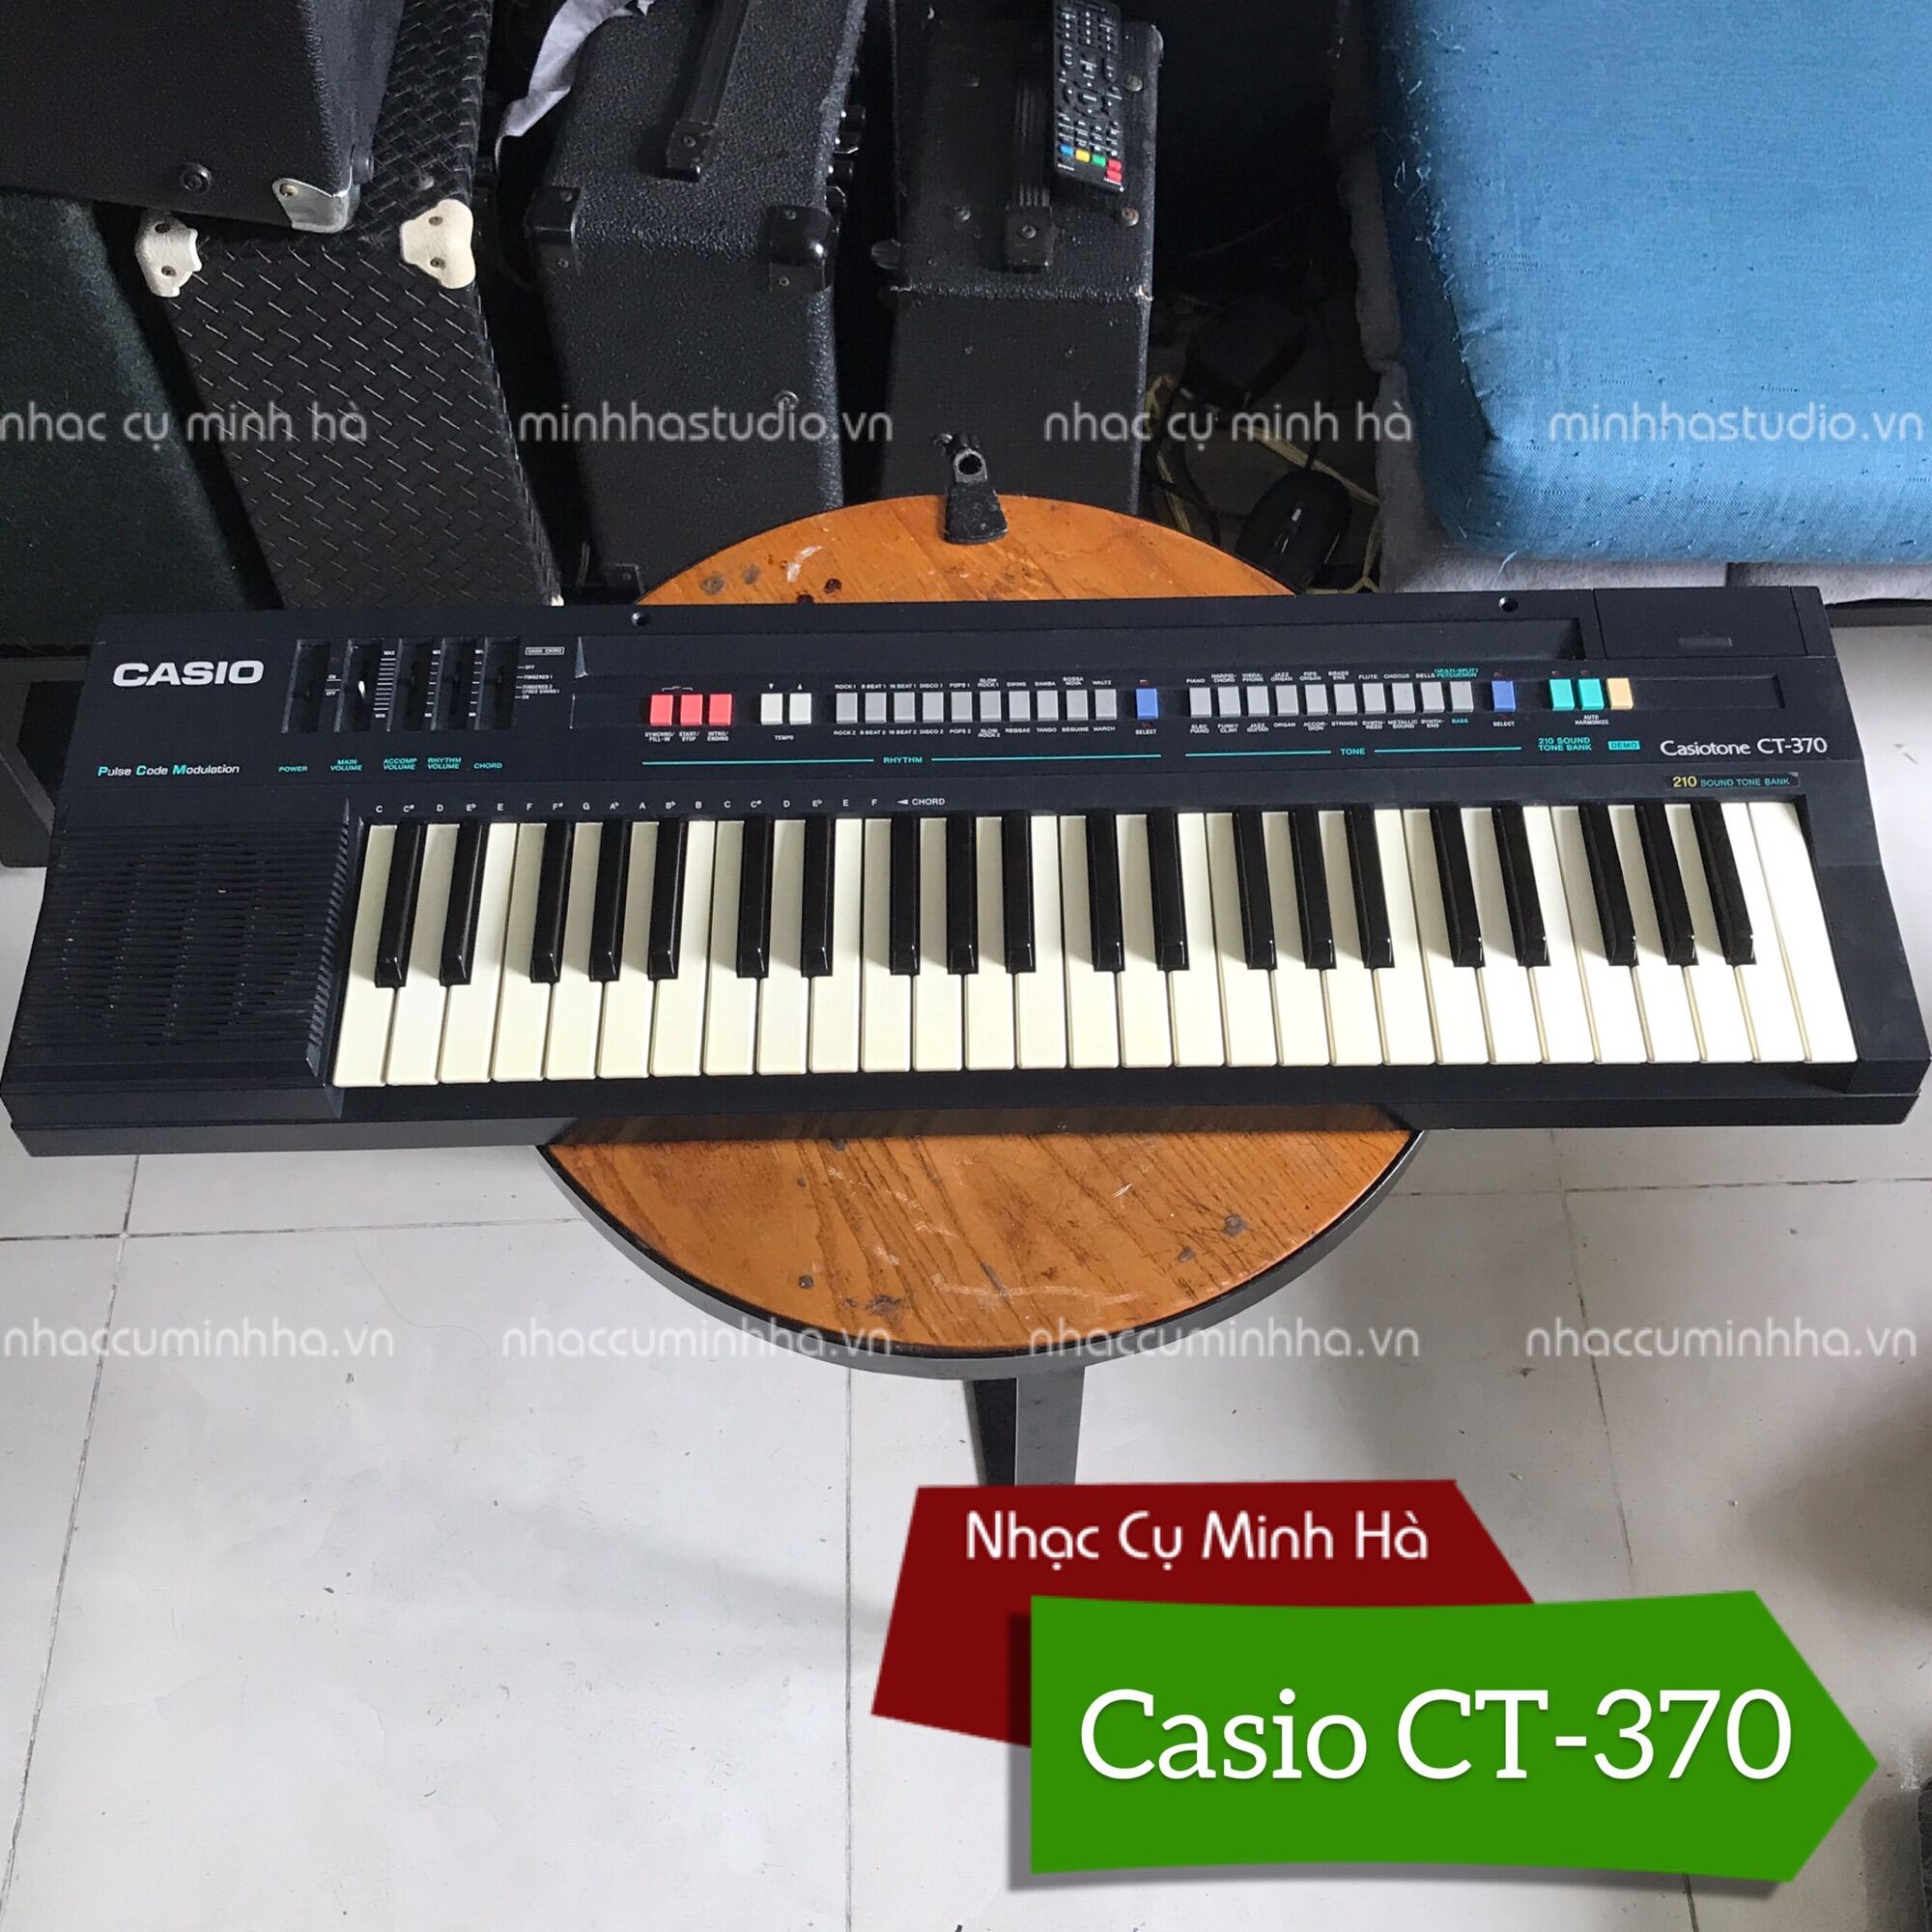 Đàn Organ Casio CT-370 chính hãng đã qua sử dụng, chạy tốt mọi chức năng